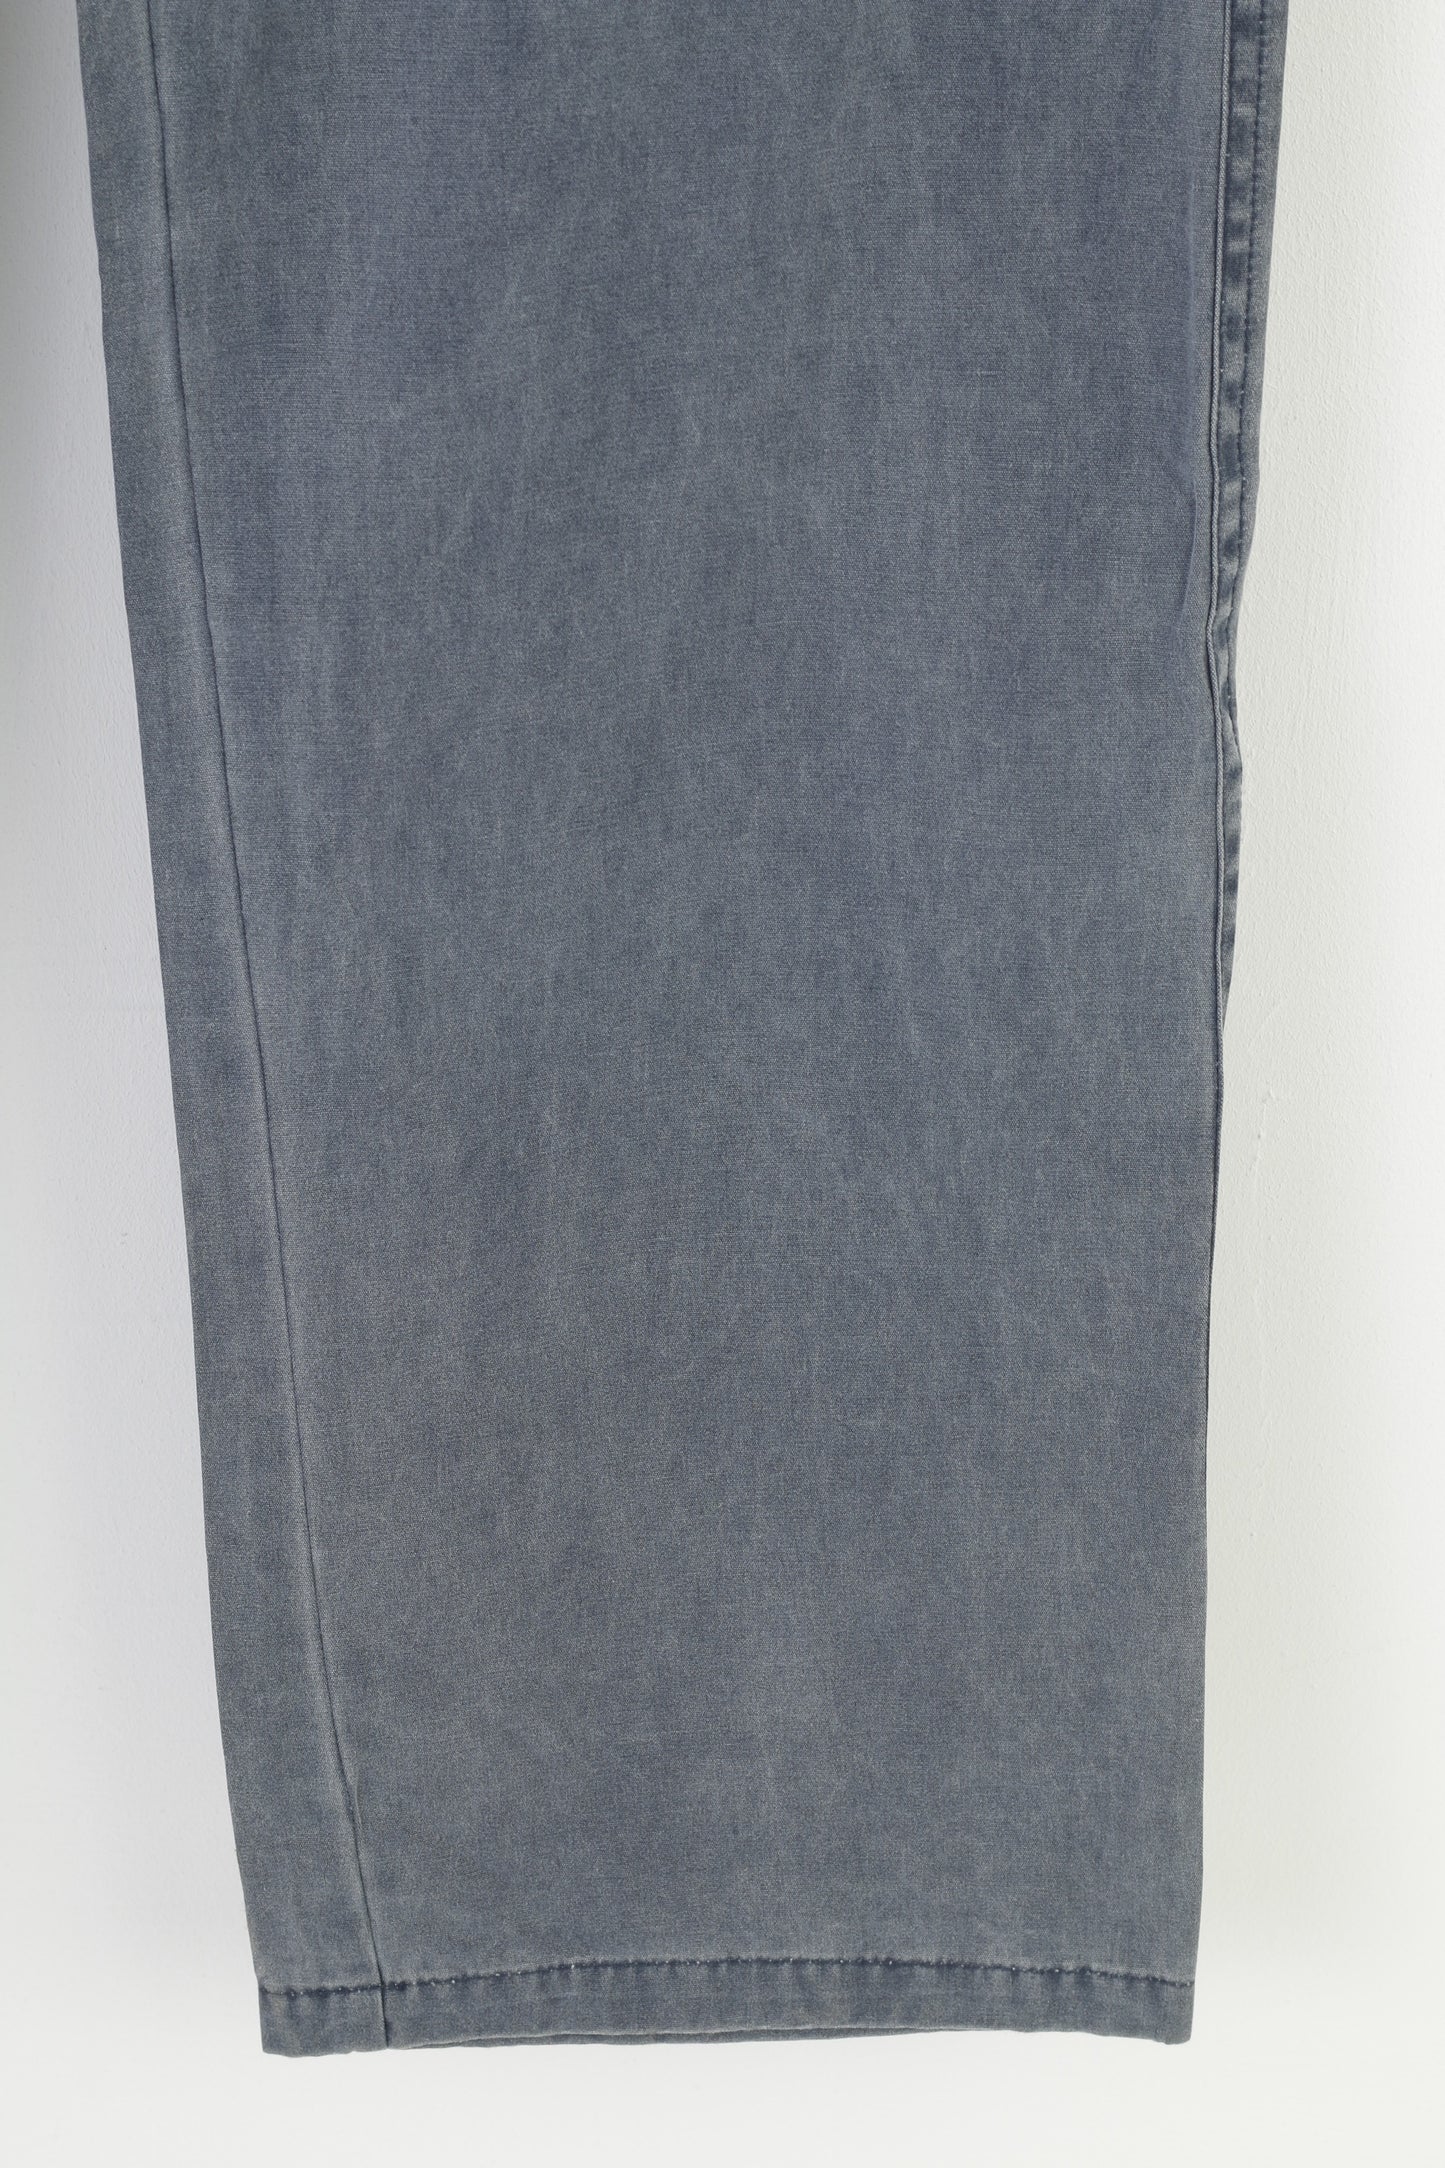 Bernardi Collection Men 54 Trousers Grey Cotton Classic Light  Jeans Vintage Pants